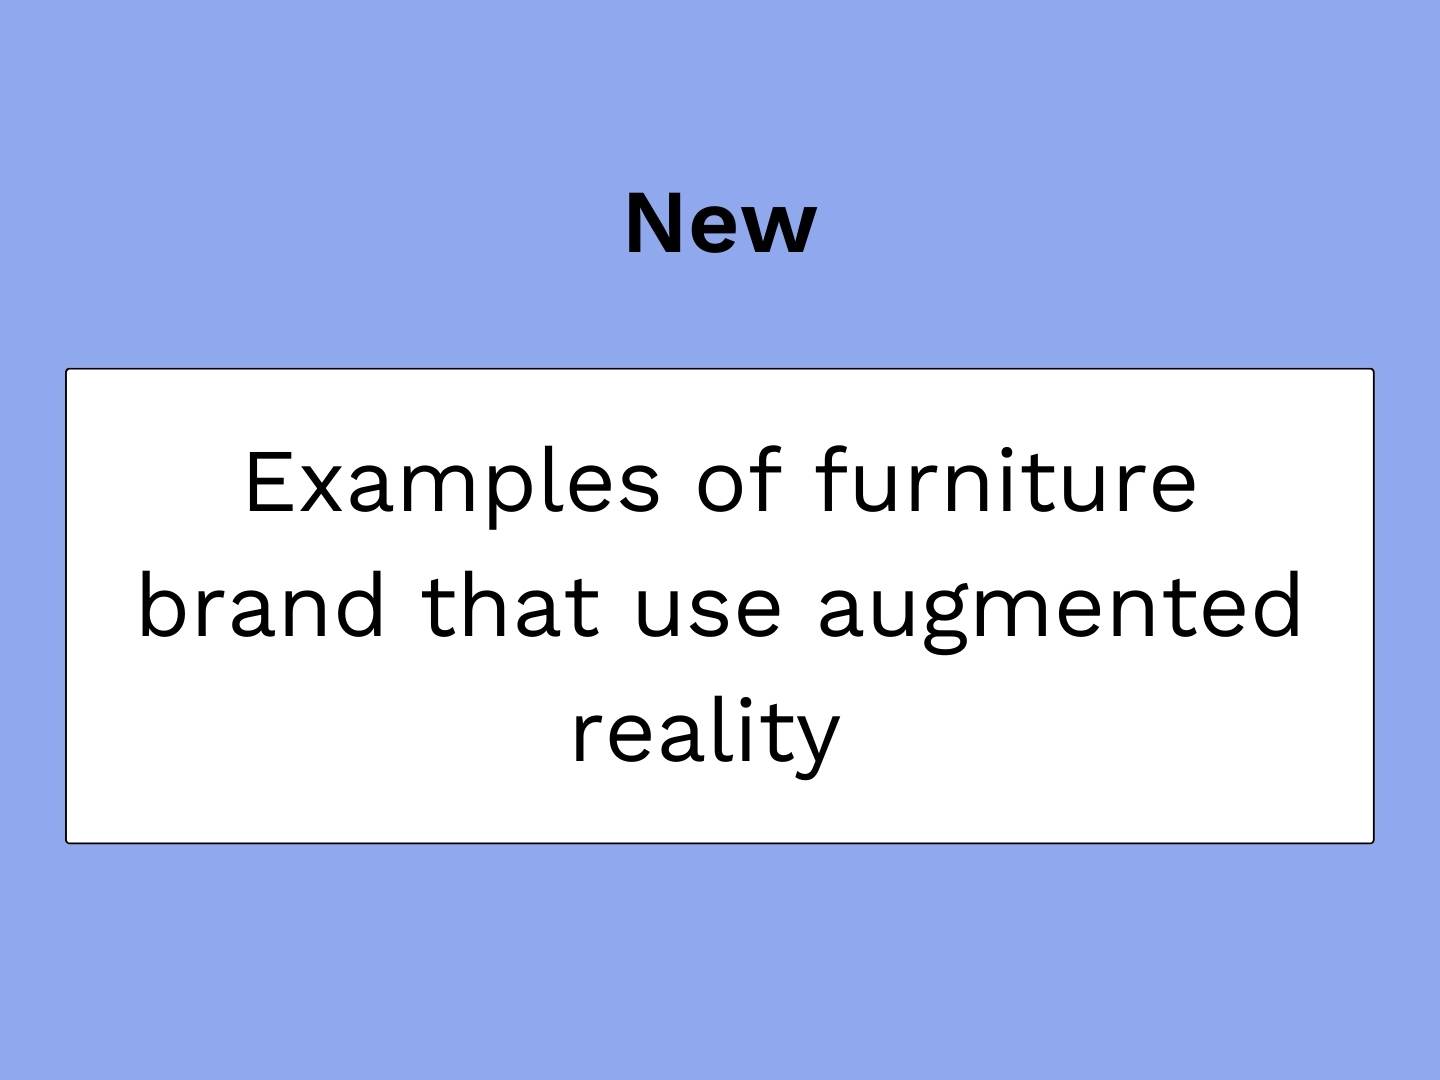 vignette blogartikel over meubelmerken die augmented reality gebruiken